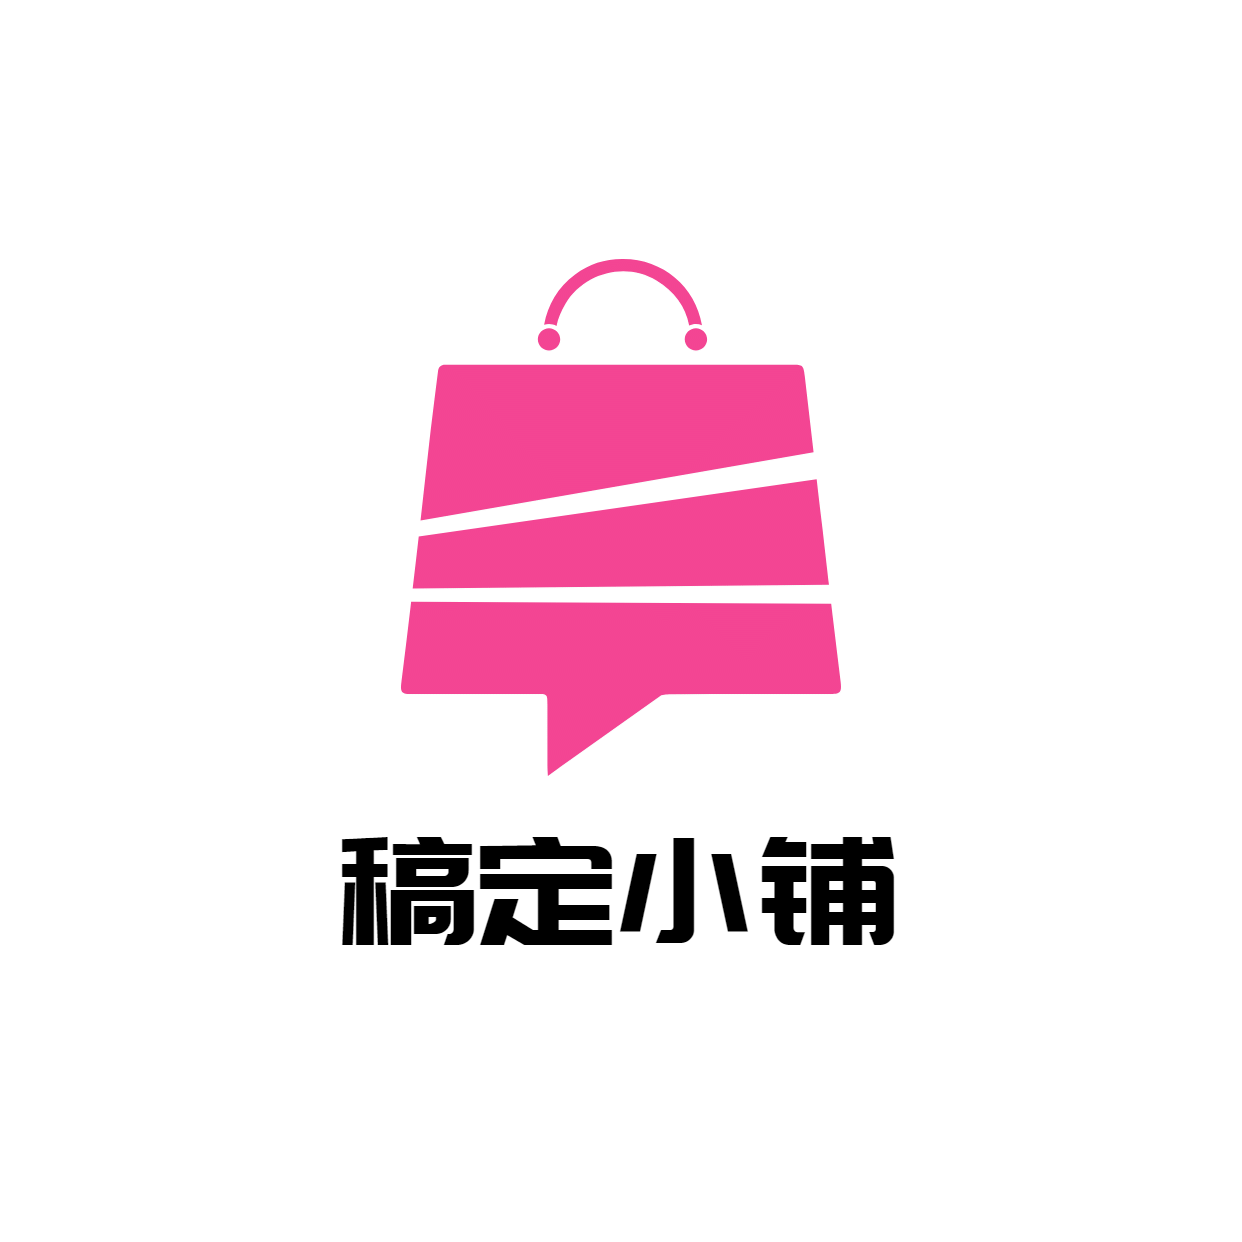 简约时尚店标头像logo预览效果